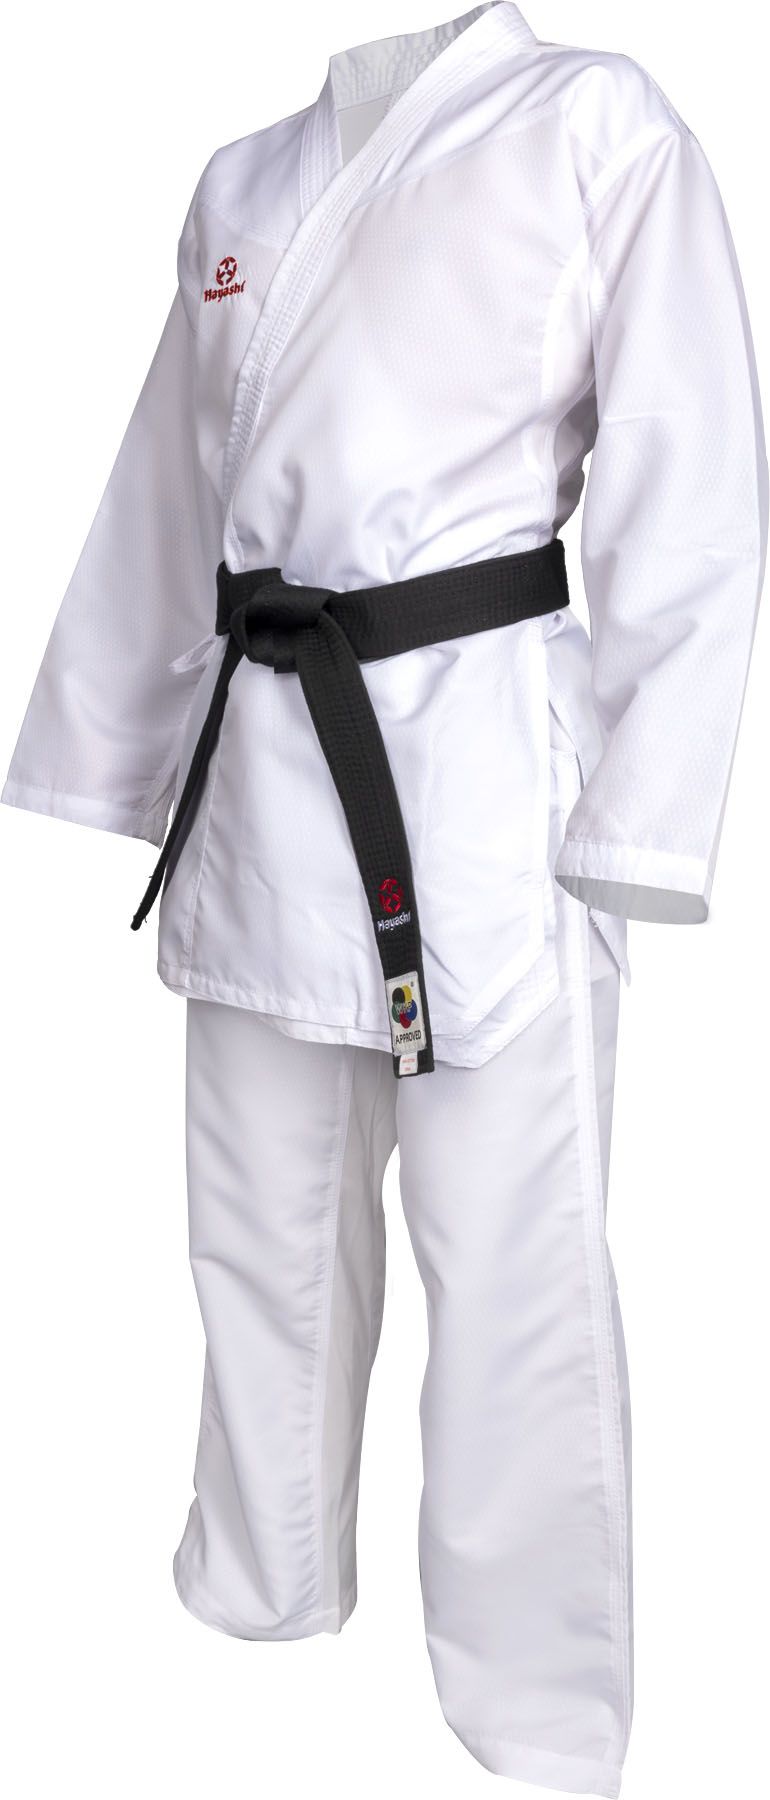 Hayashi Karate-Gi PREMIUM KUMITE , 0473-14 - weiß/rot